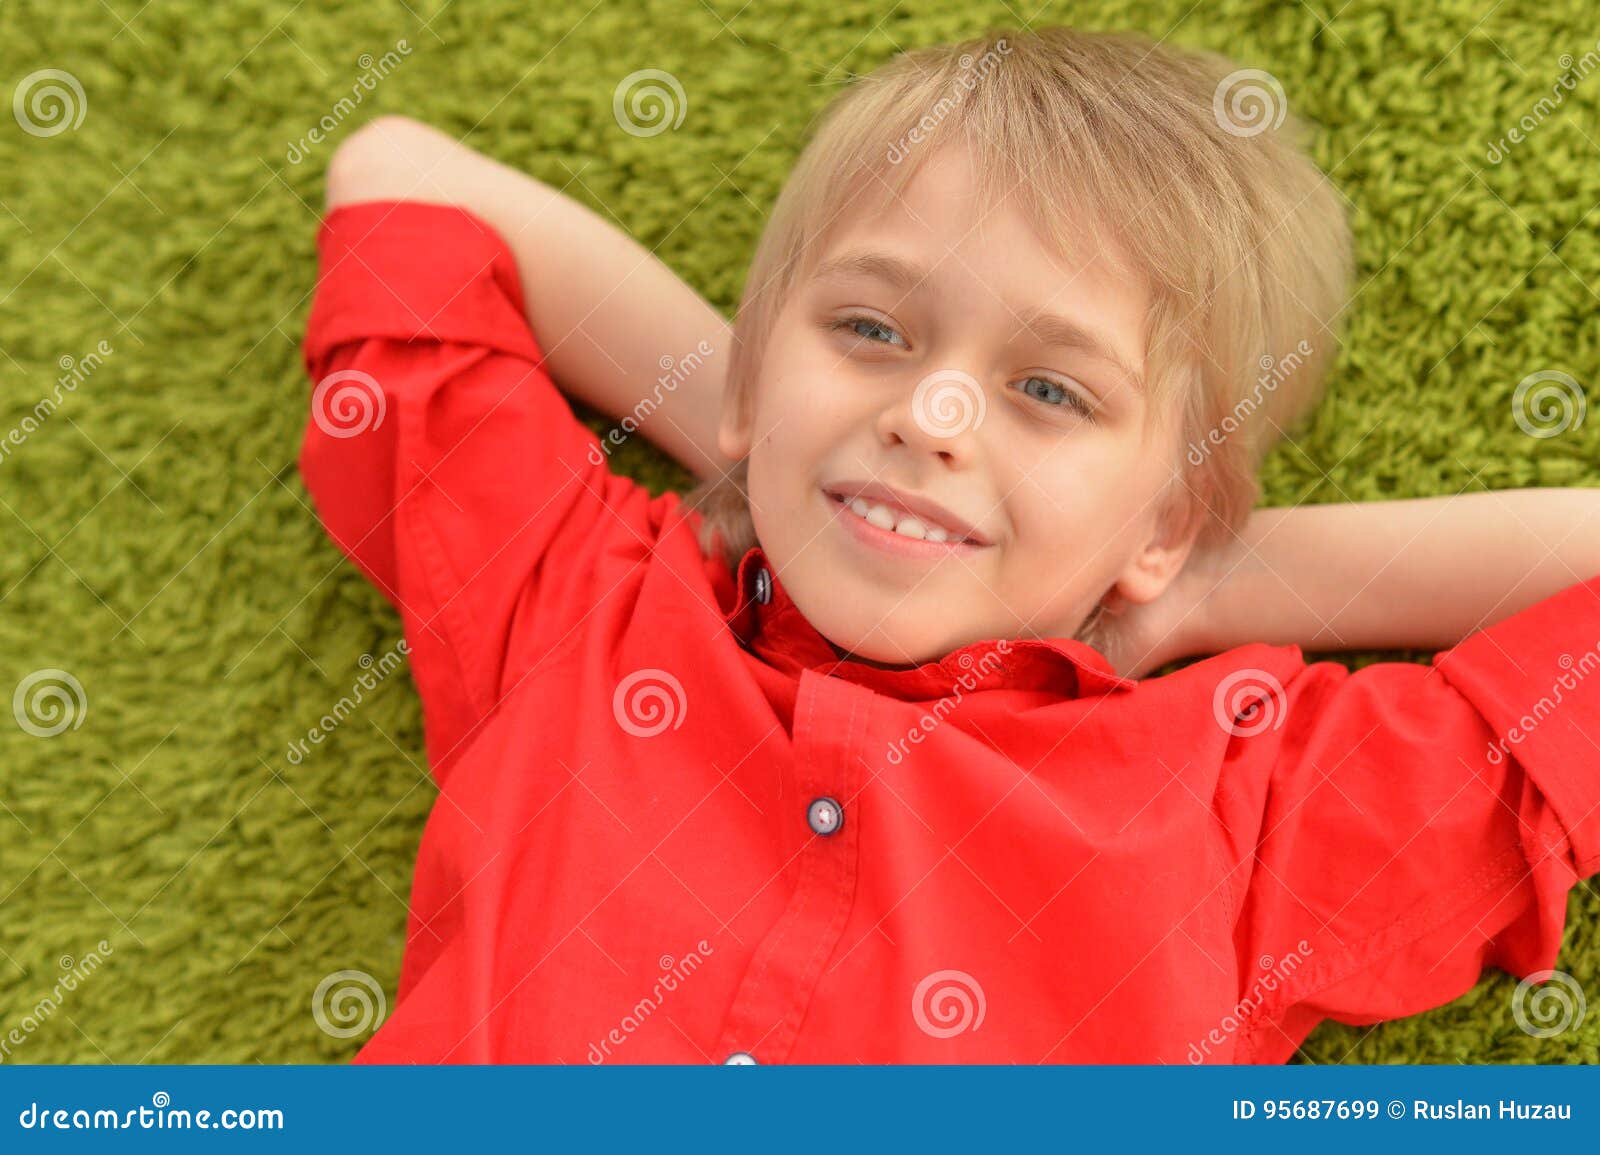 portrat of blonde little boy